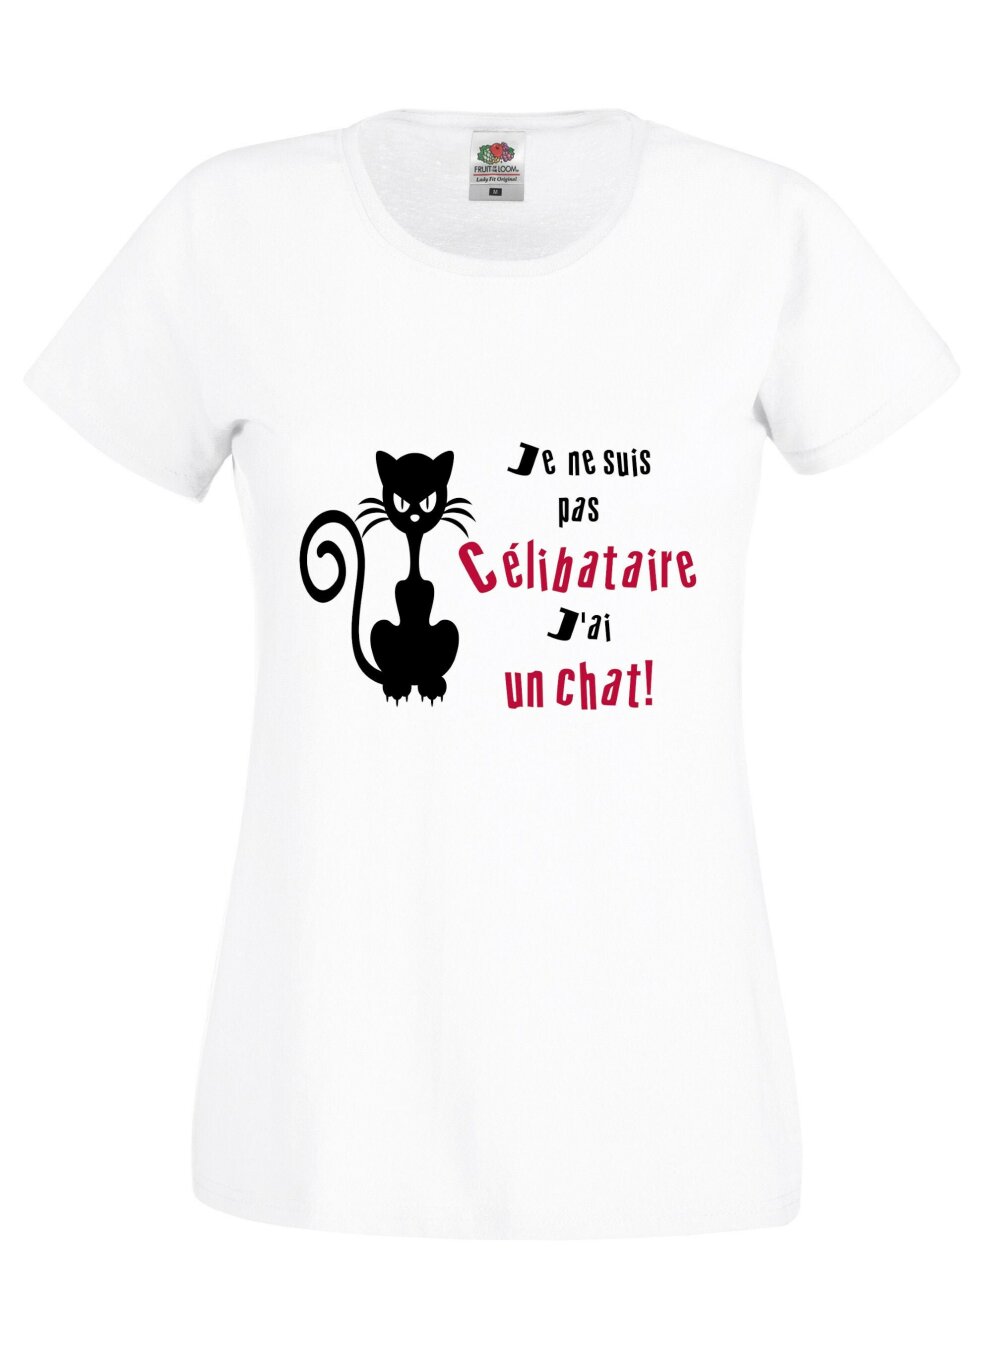 T-shirt homme humoristique chat ! idée cadeau pour les fans de